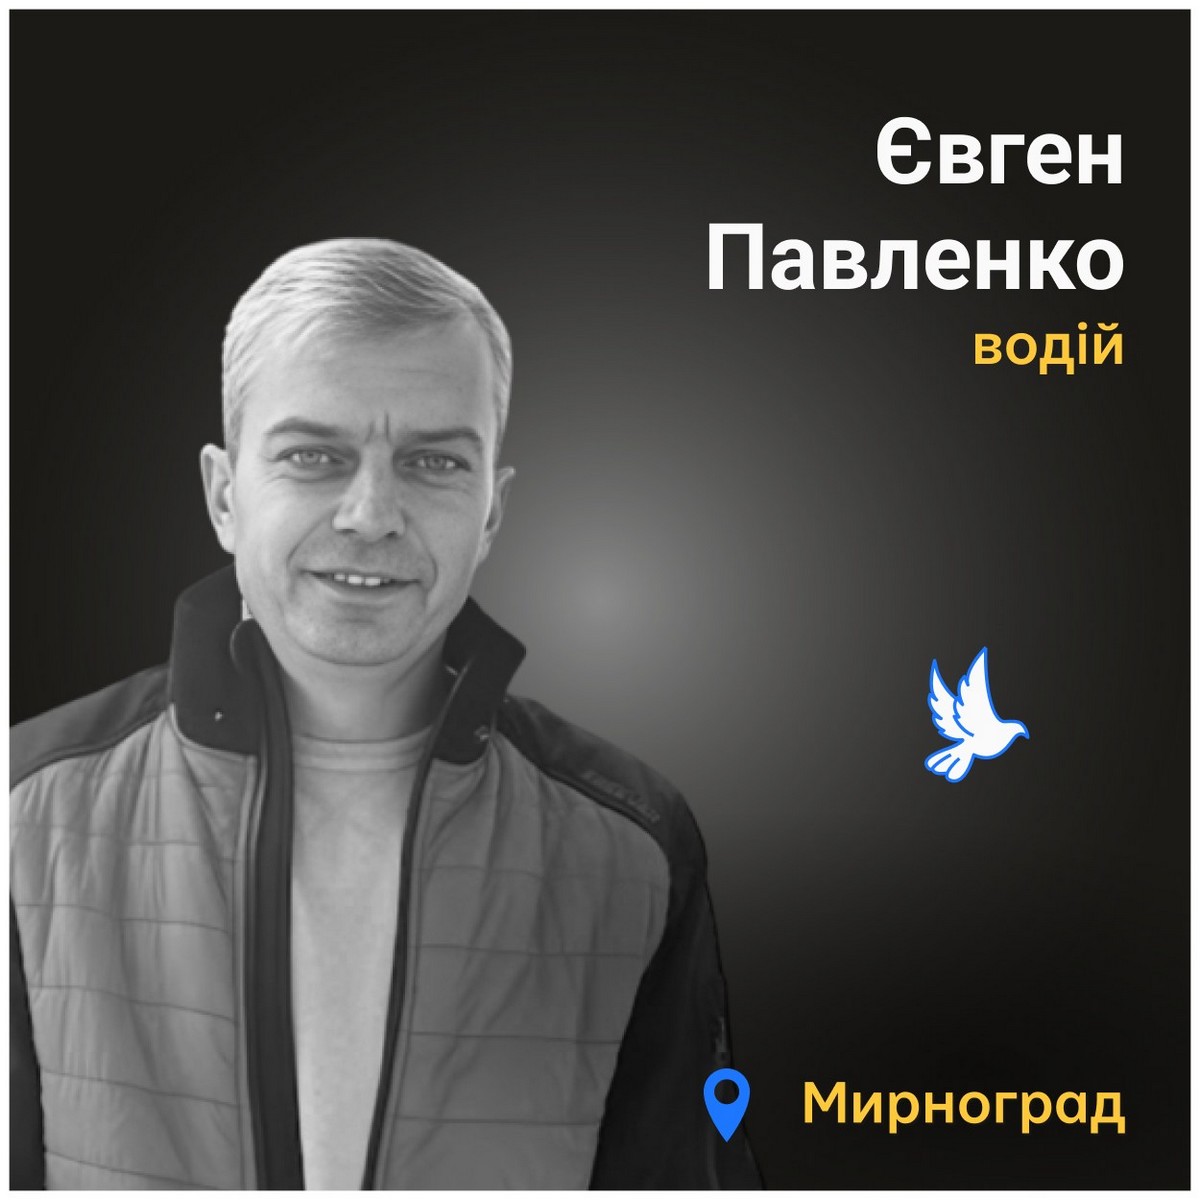 Меморіал: вбиті росією. Євген Павленко, 42 роки, Мирноград, липень